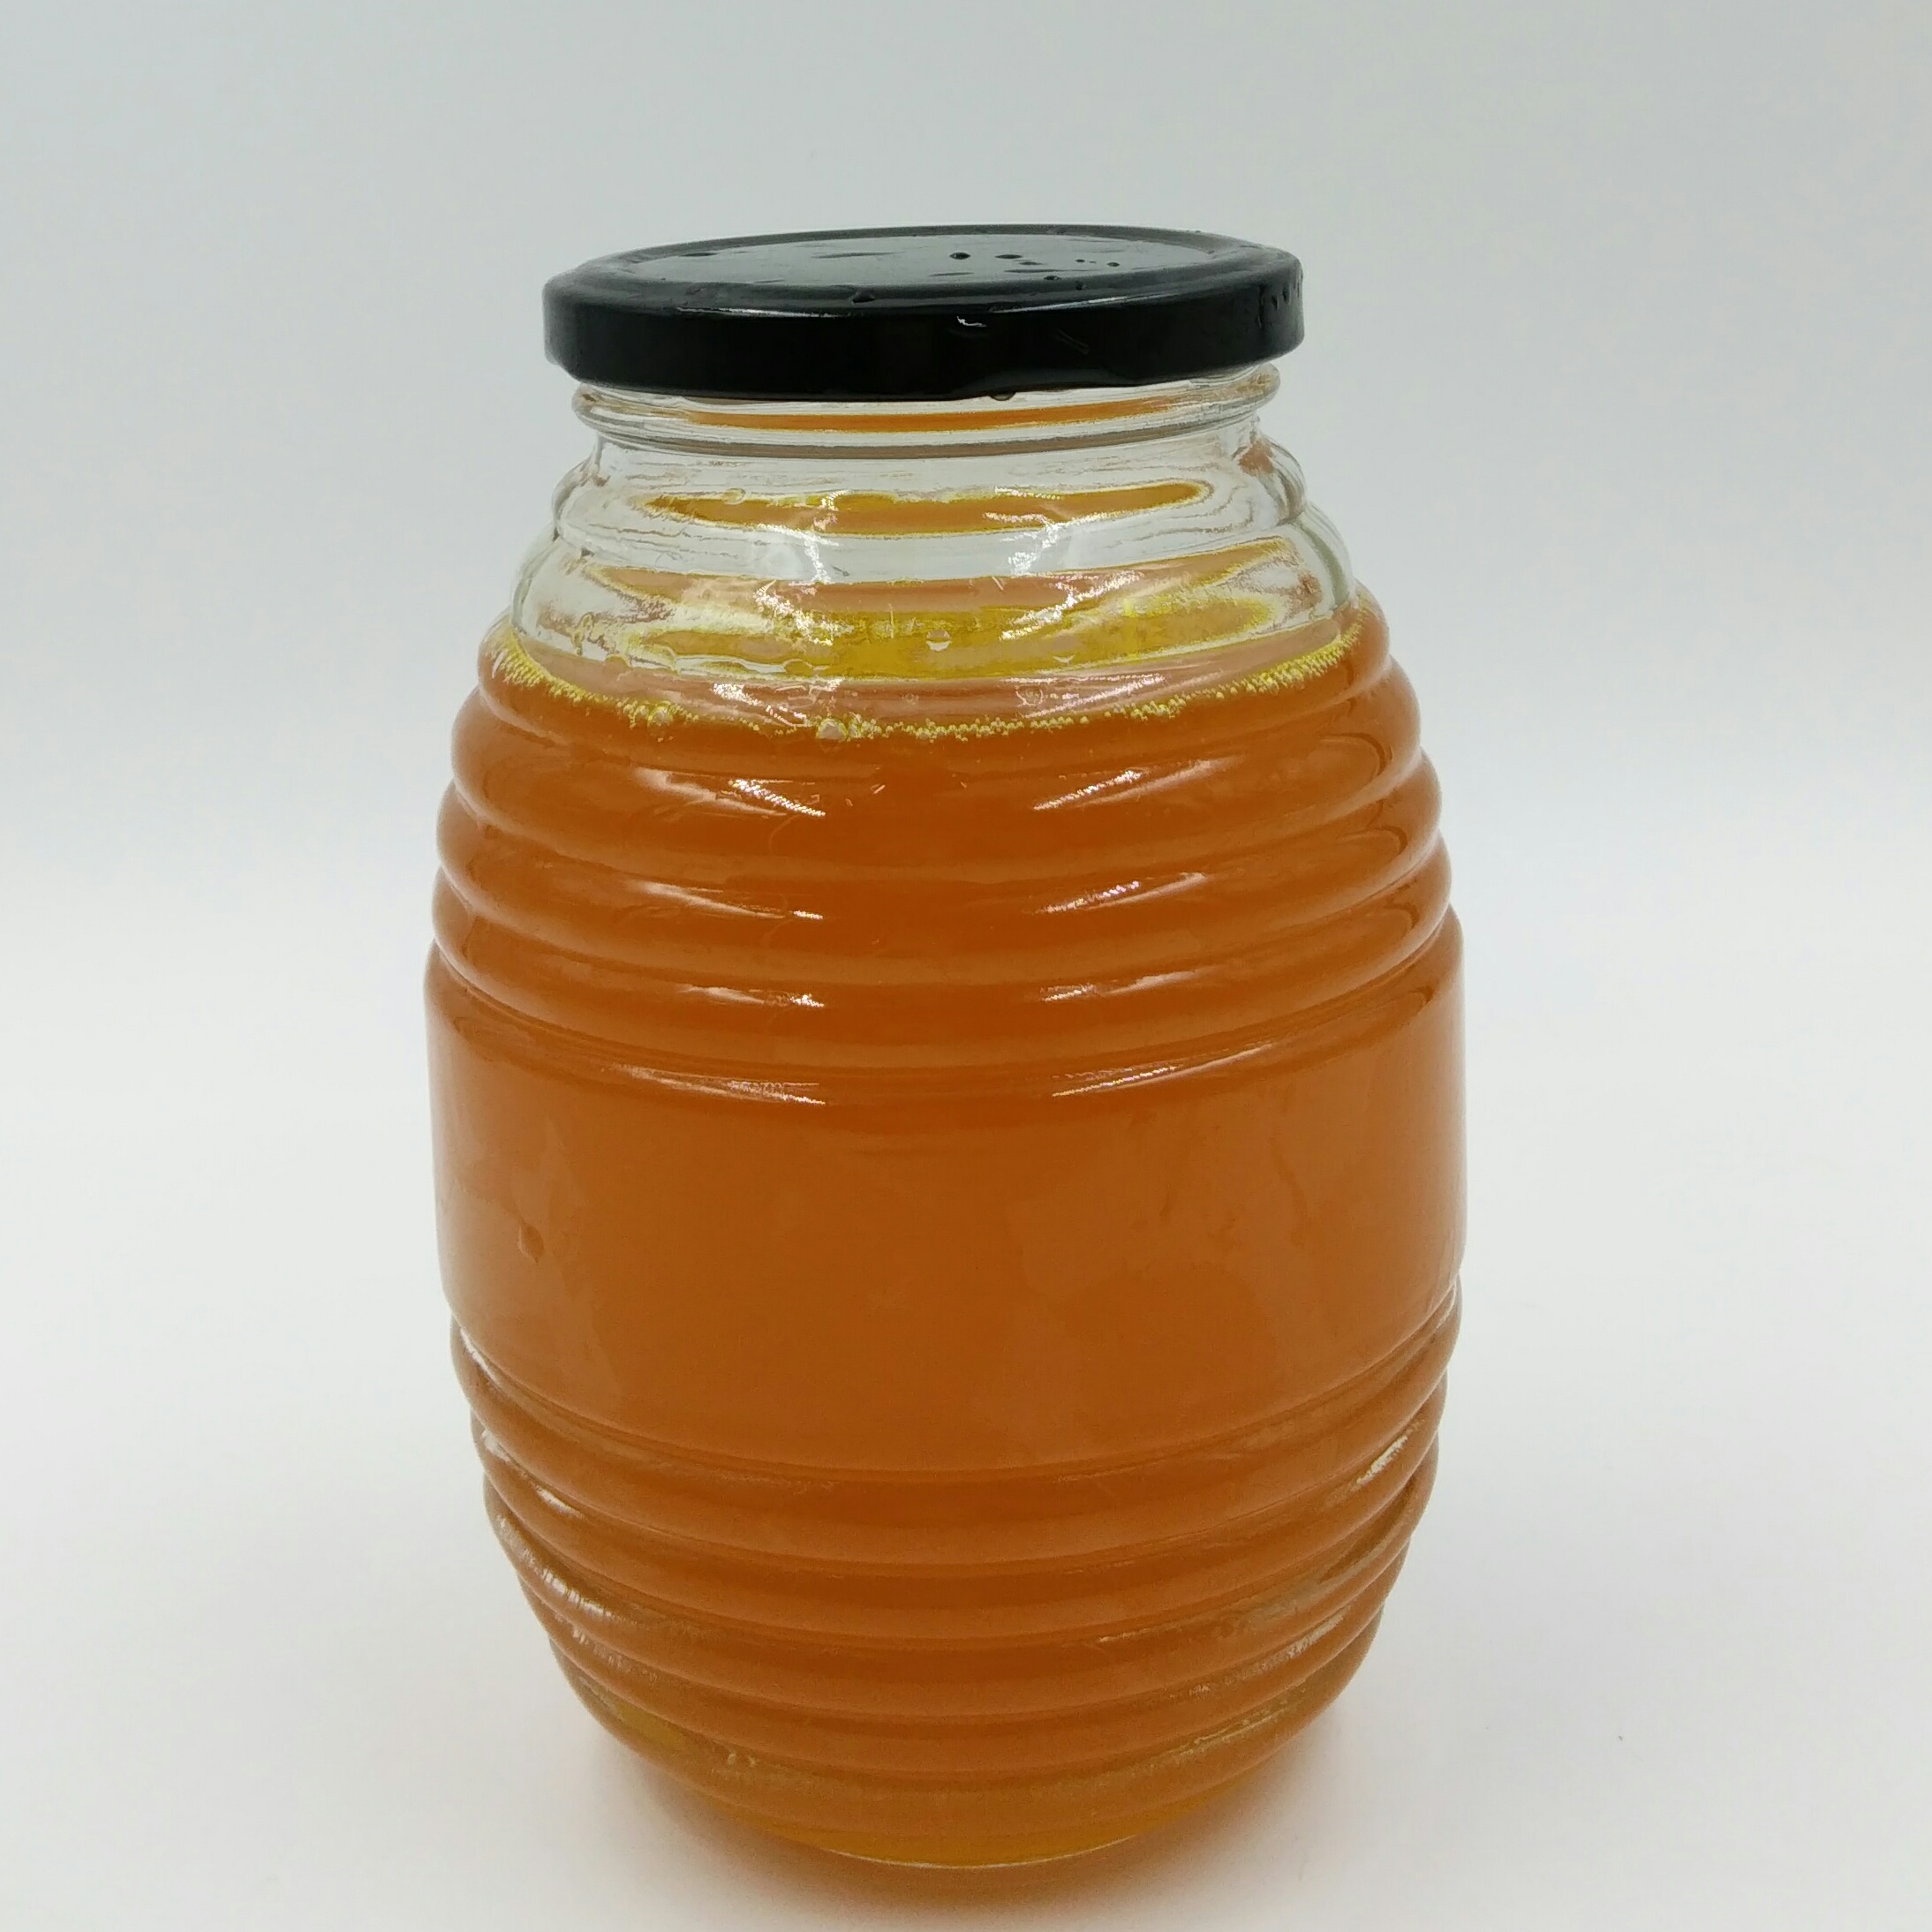 批发玻璃螺纹蜂蜜瓶果酱瓶马口铁盖螺纹玻璃瓶酱菜瓶罐头瓶可定制图片